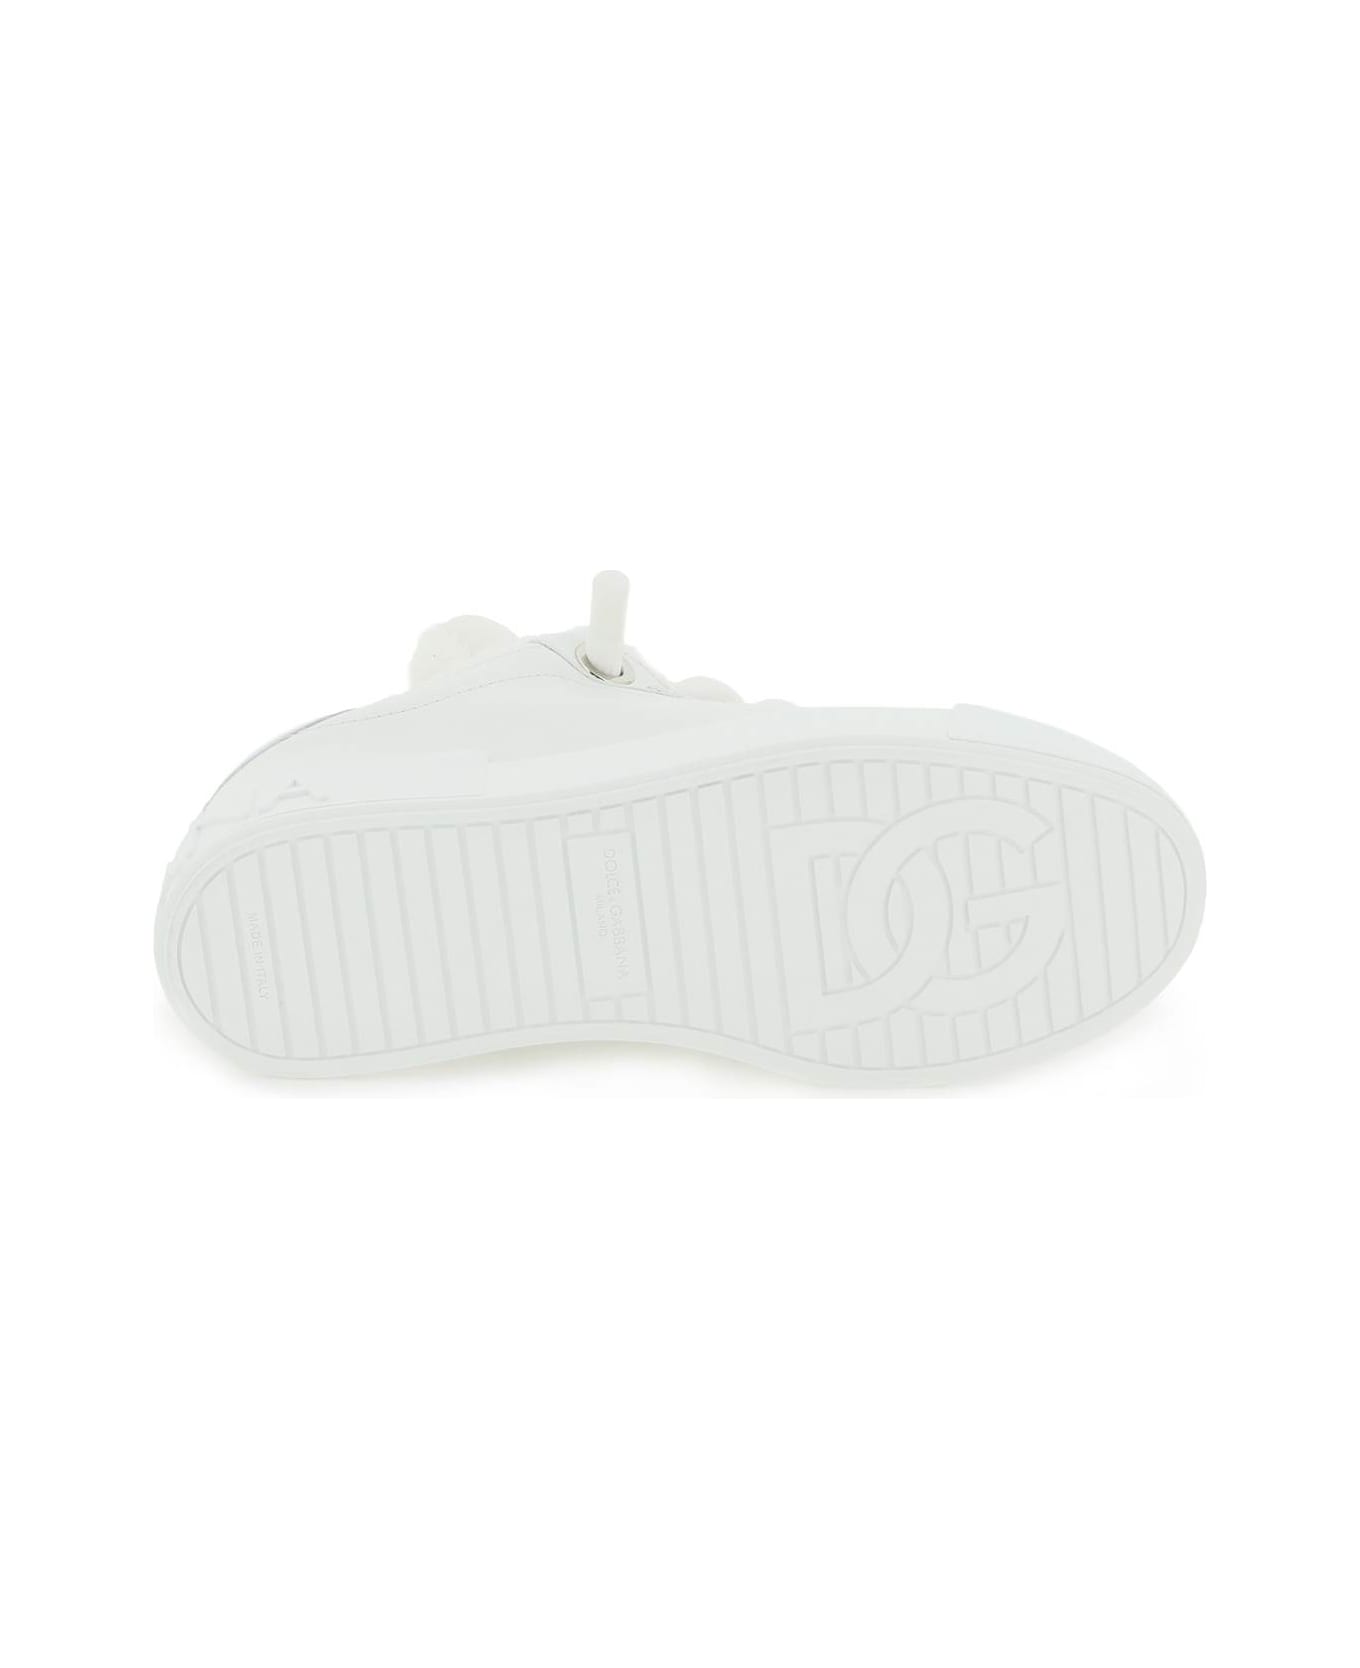 Dolce & Gabbana Portofino Sneaker - Bianco Ottico スニーカー